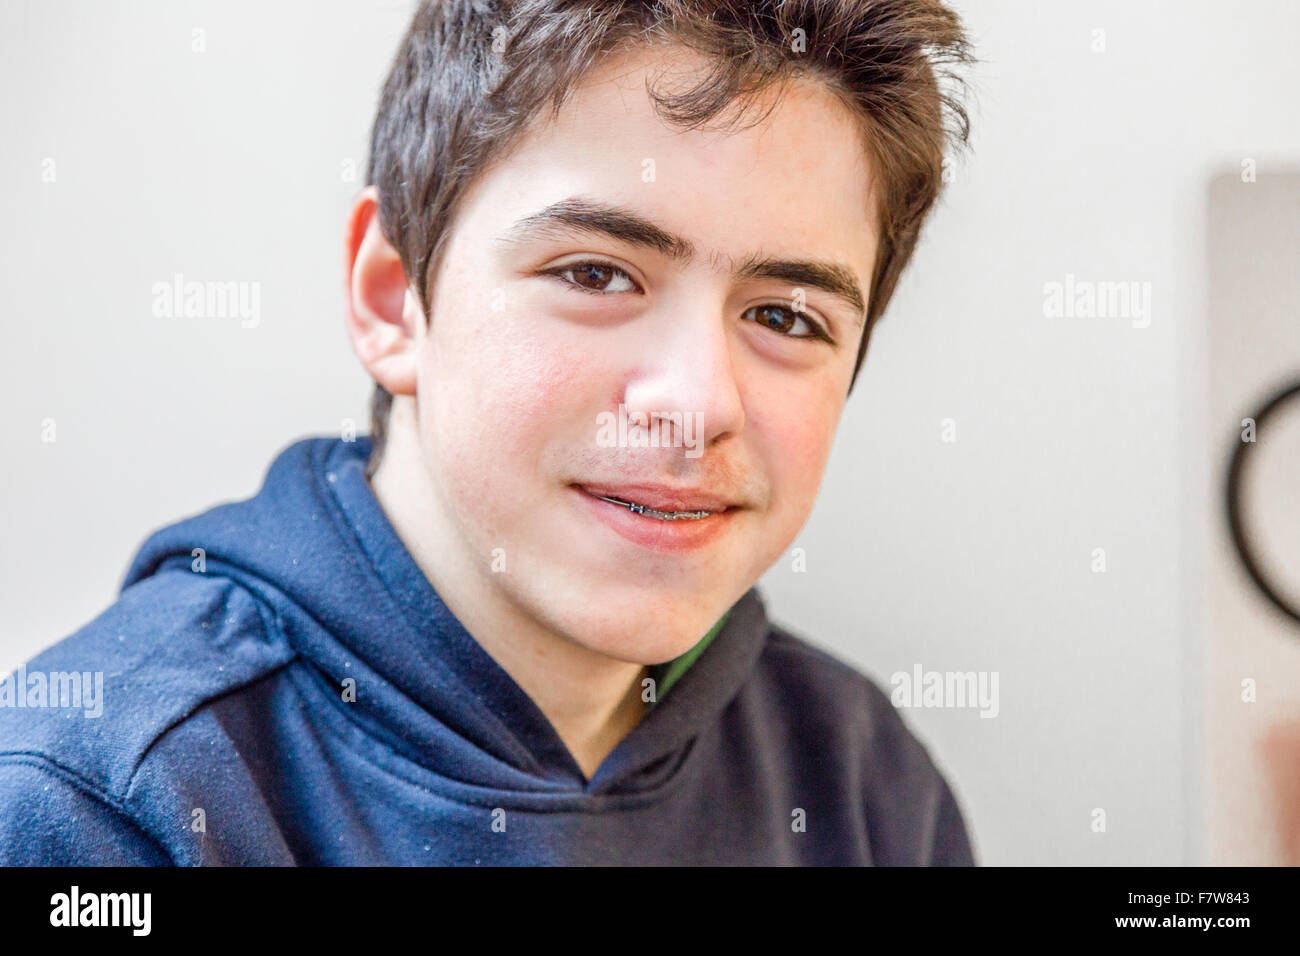 Young boy heureux et souriant à bretelles sur les dents Banque D'Images